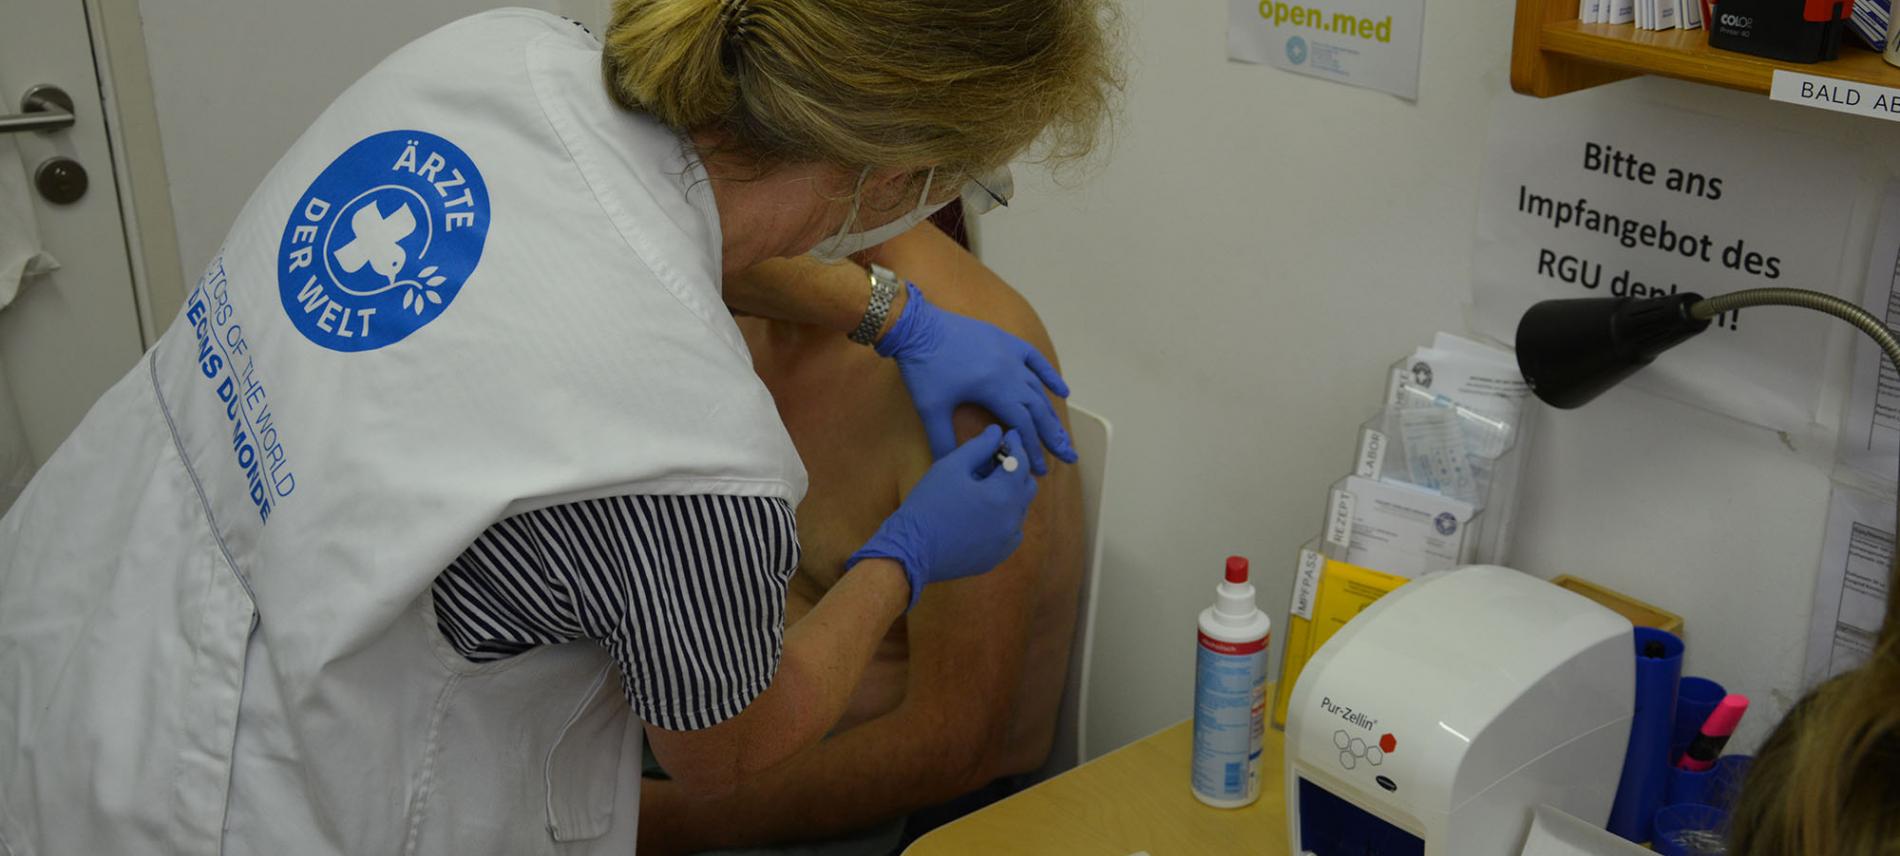 Impfsprechstunde in der medizinischen Anlaufstelle. Foto: Ärzte der Welt